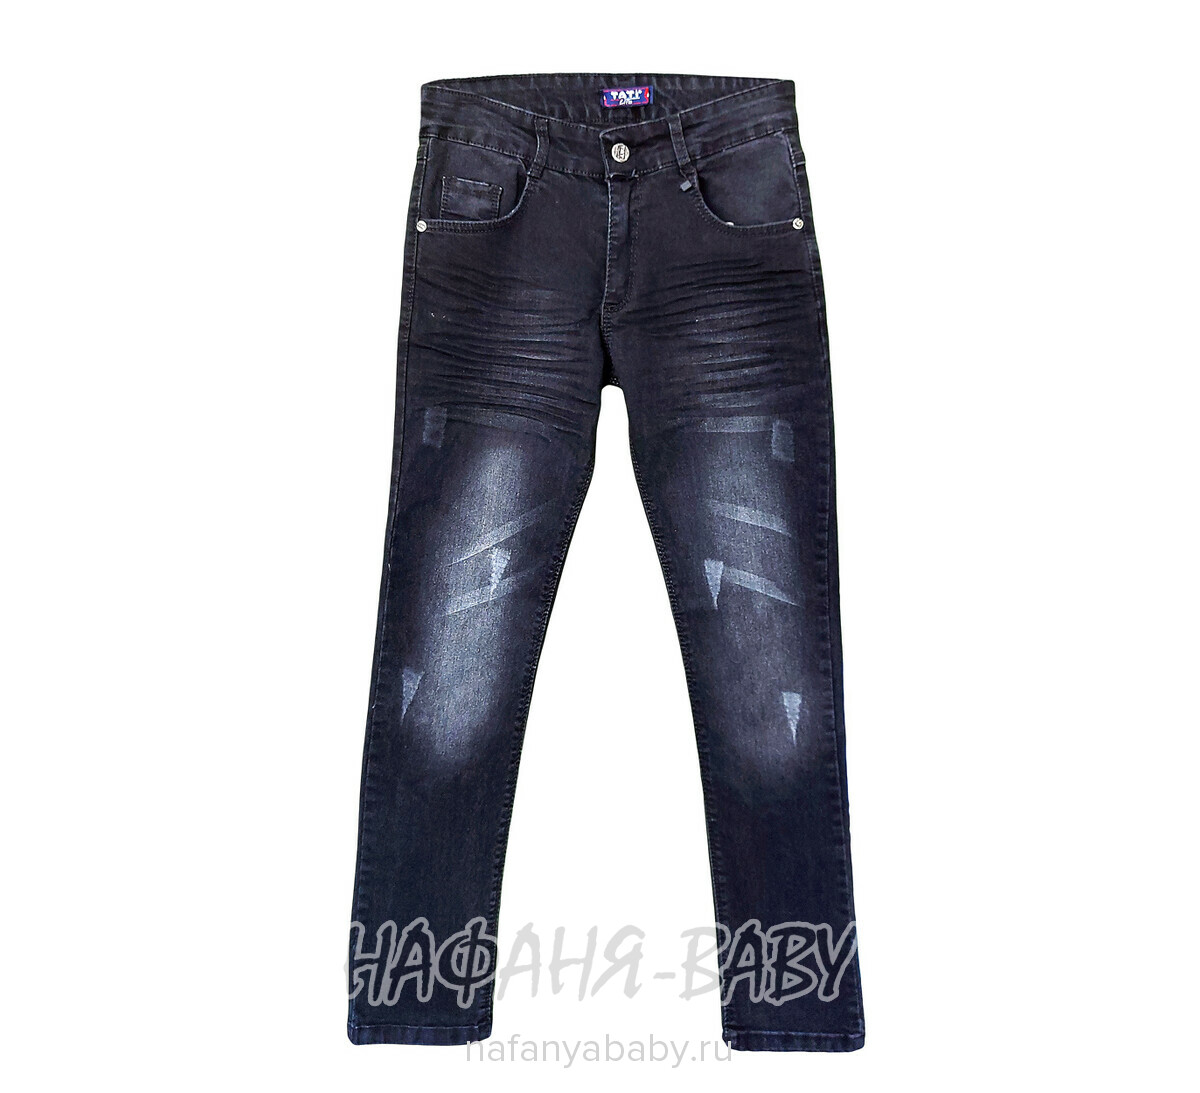 Подростковые джинсы TATI Jeans арт: 6101, 10-15 лет, оптом Турция